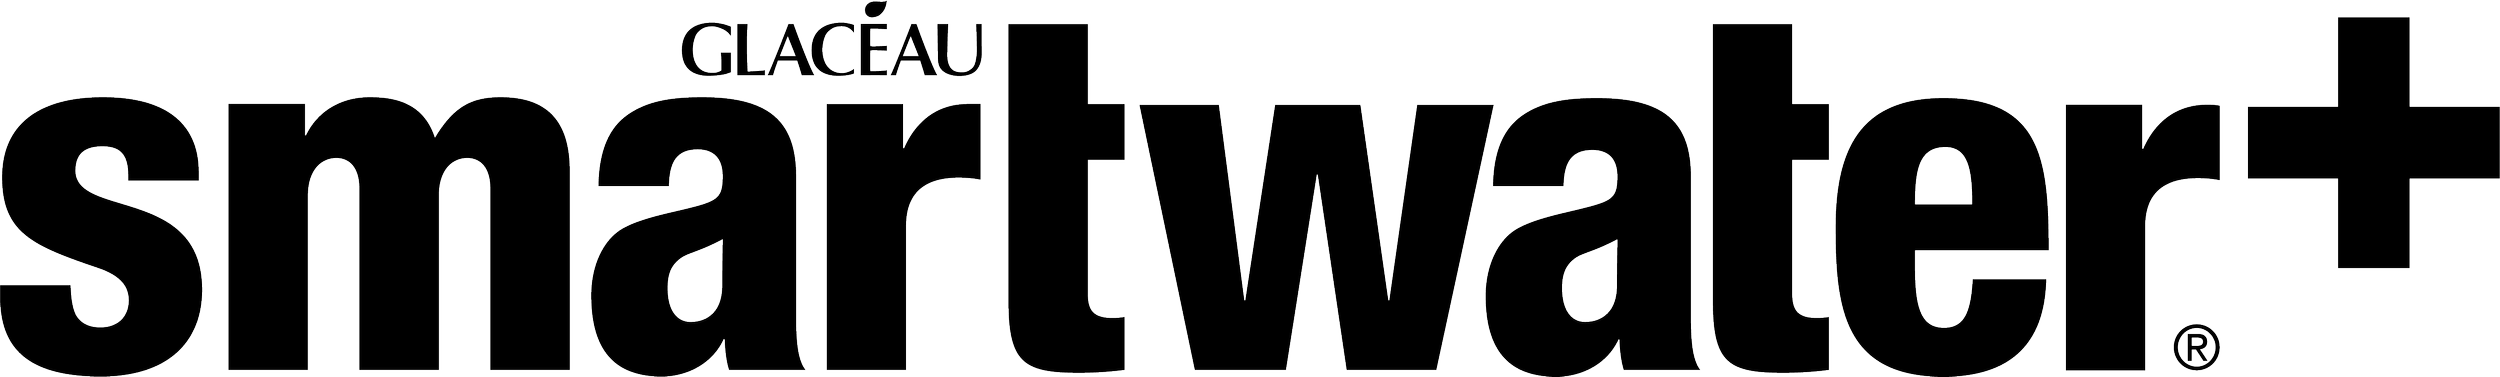 Smartwater_logo.png